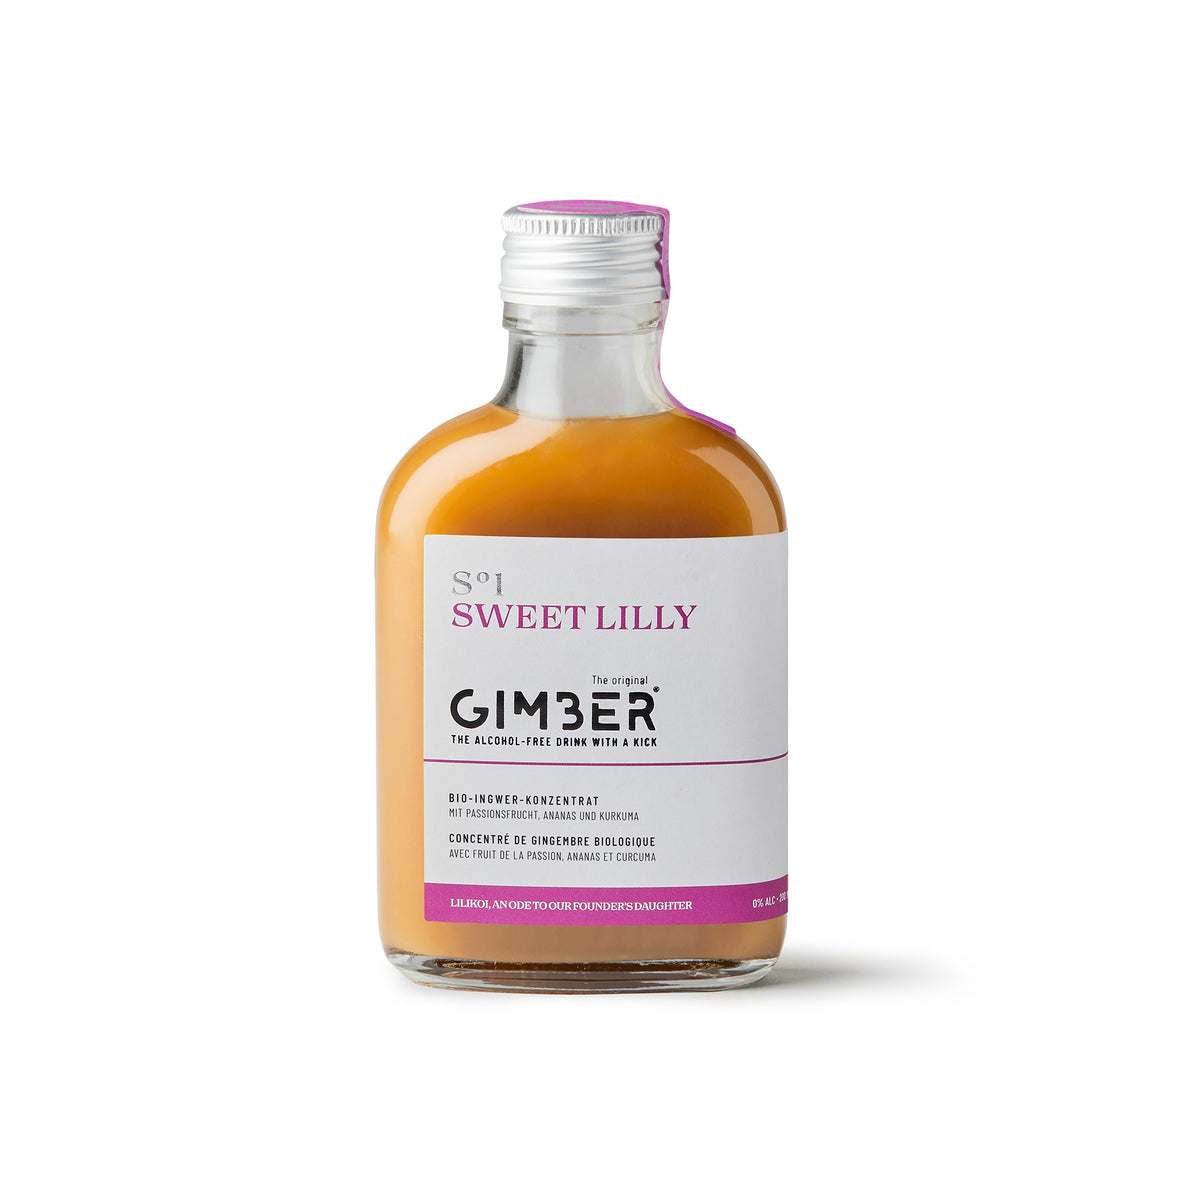 Gimber S°1 Sweet Lilly - Concentré de gingembre Bio - 200 ml. Collection Producteur GIMBER, concentré de gingembre bio, peut être dégusté dans des cocktails et des mocktails sans alcool. Peut servir aussi d'aide culinaire ou d'aide pâtissière.